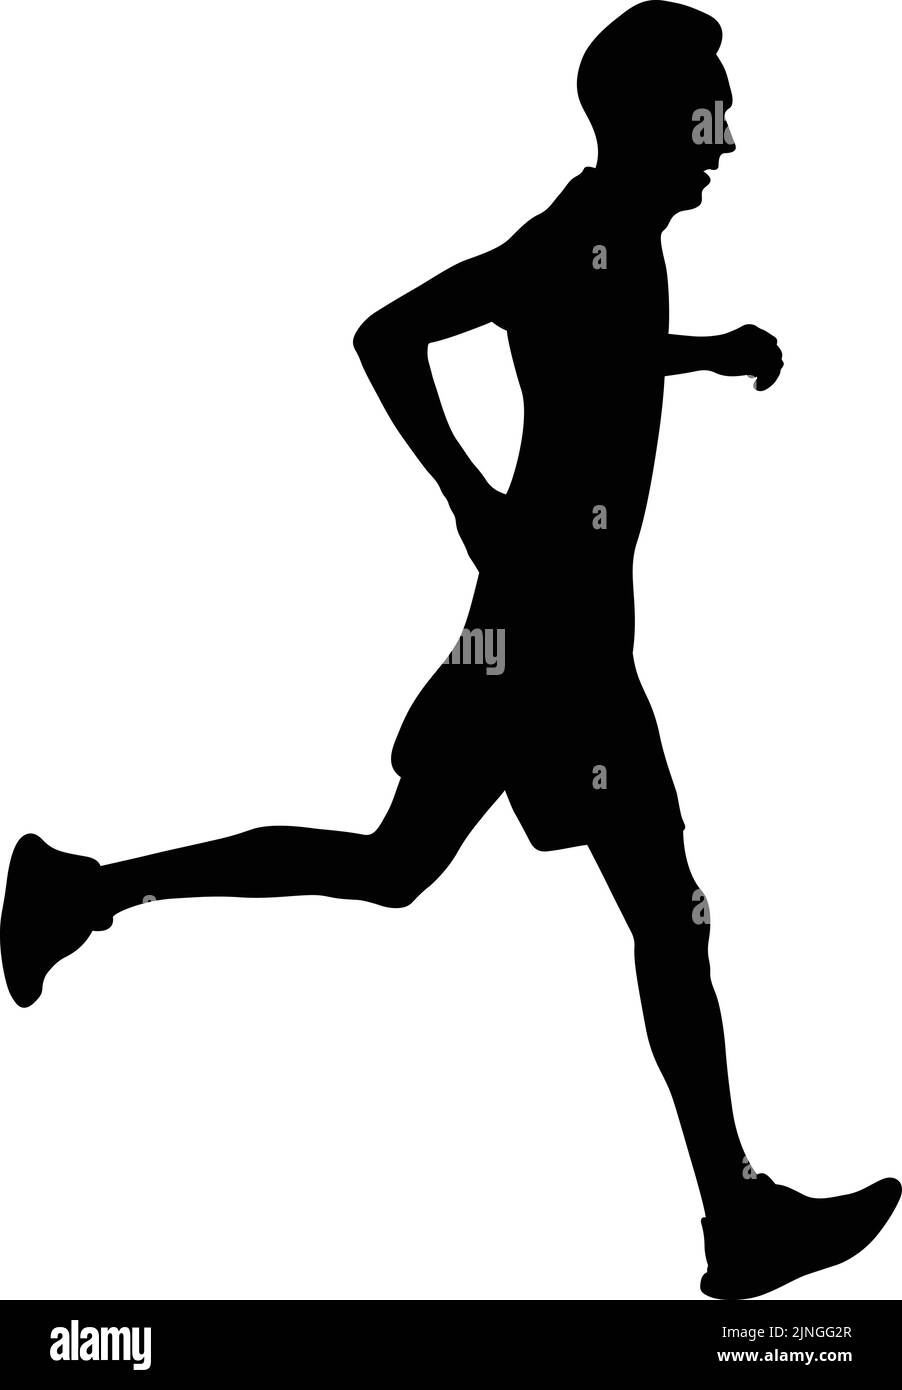 atleta de corredores correr montaña pista silueta negra Ilustración del Vector